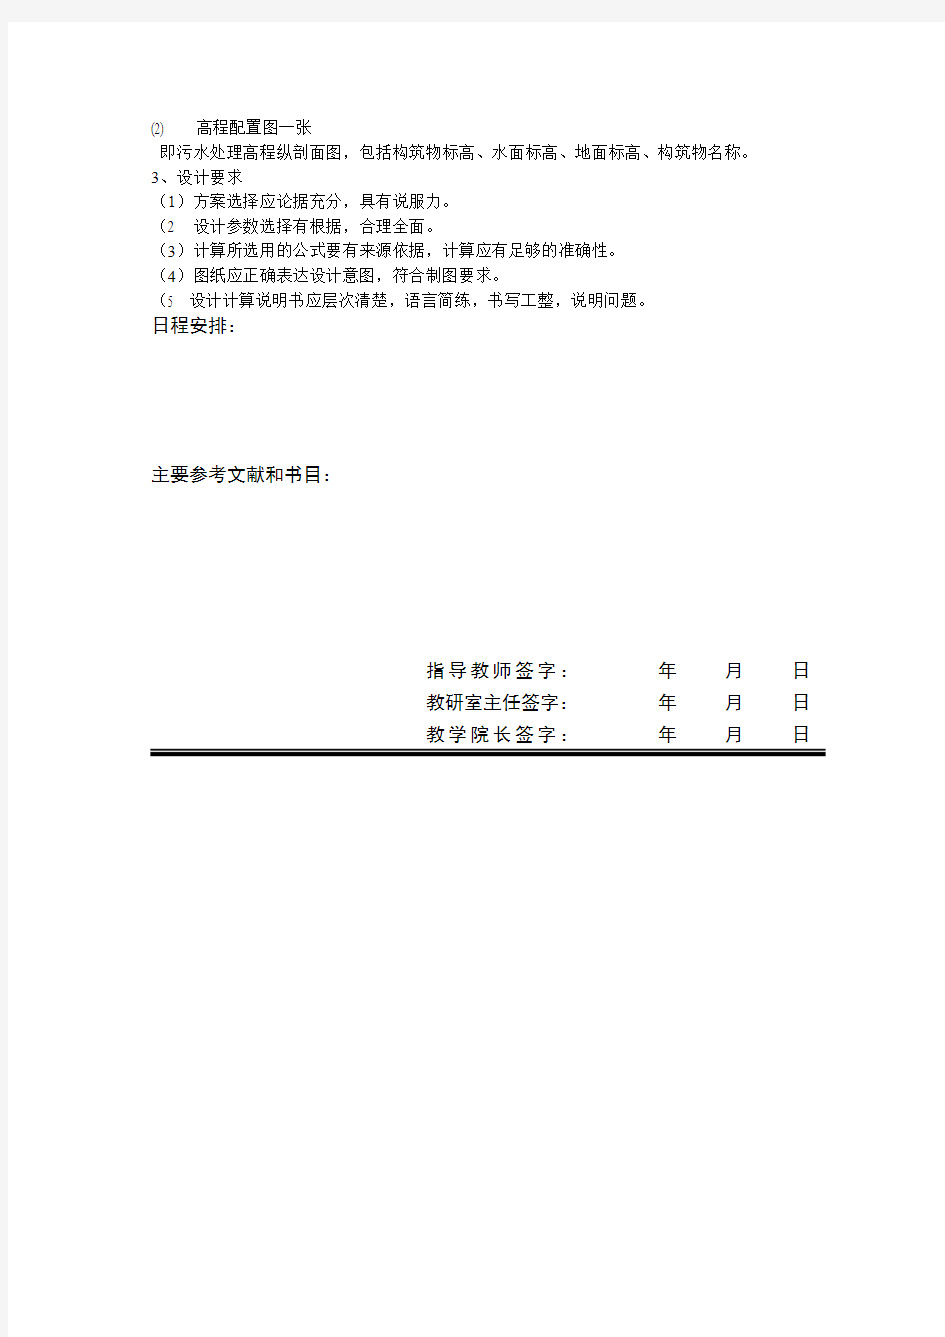 06级毕业设计任务书(污水处理厂设计)